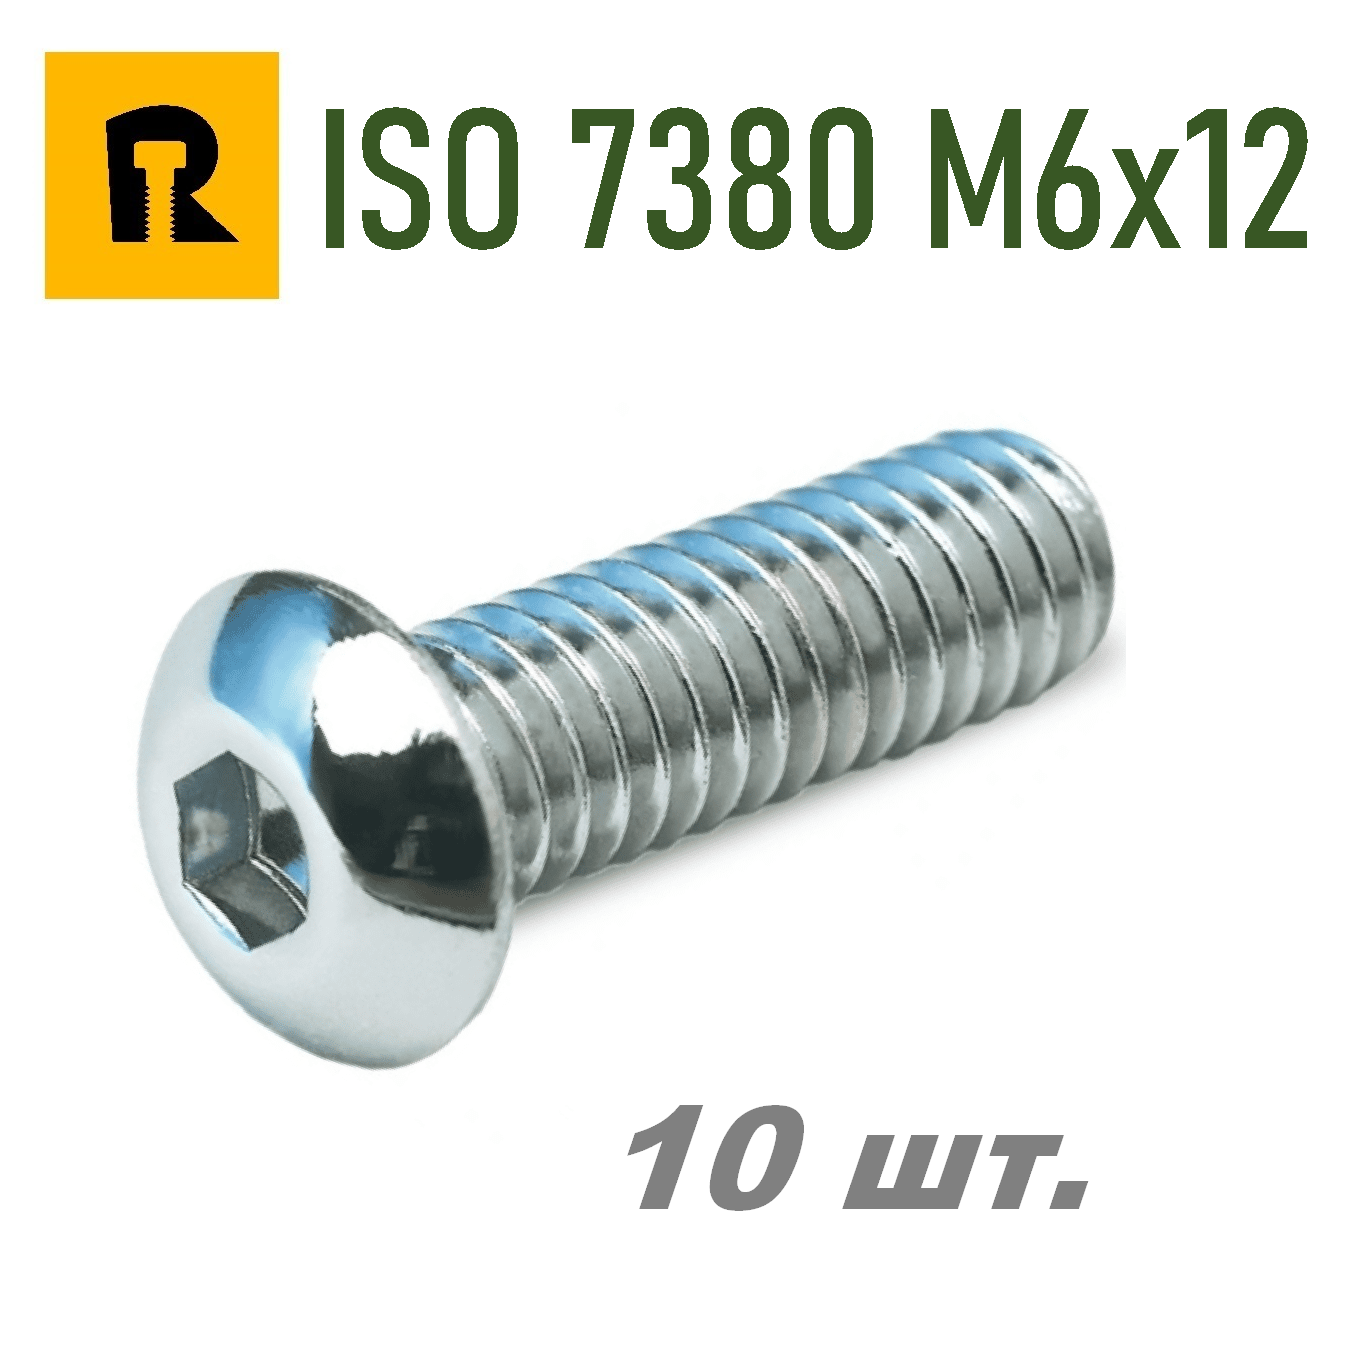 Винт ISO 7380 M6x12 s4 кп 10.9 10 шт.